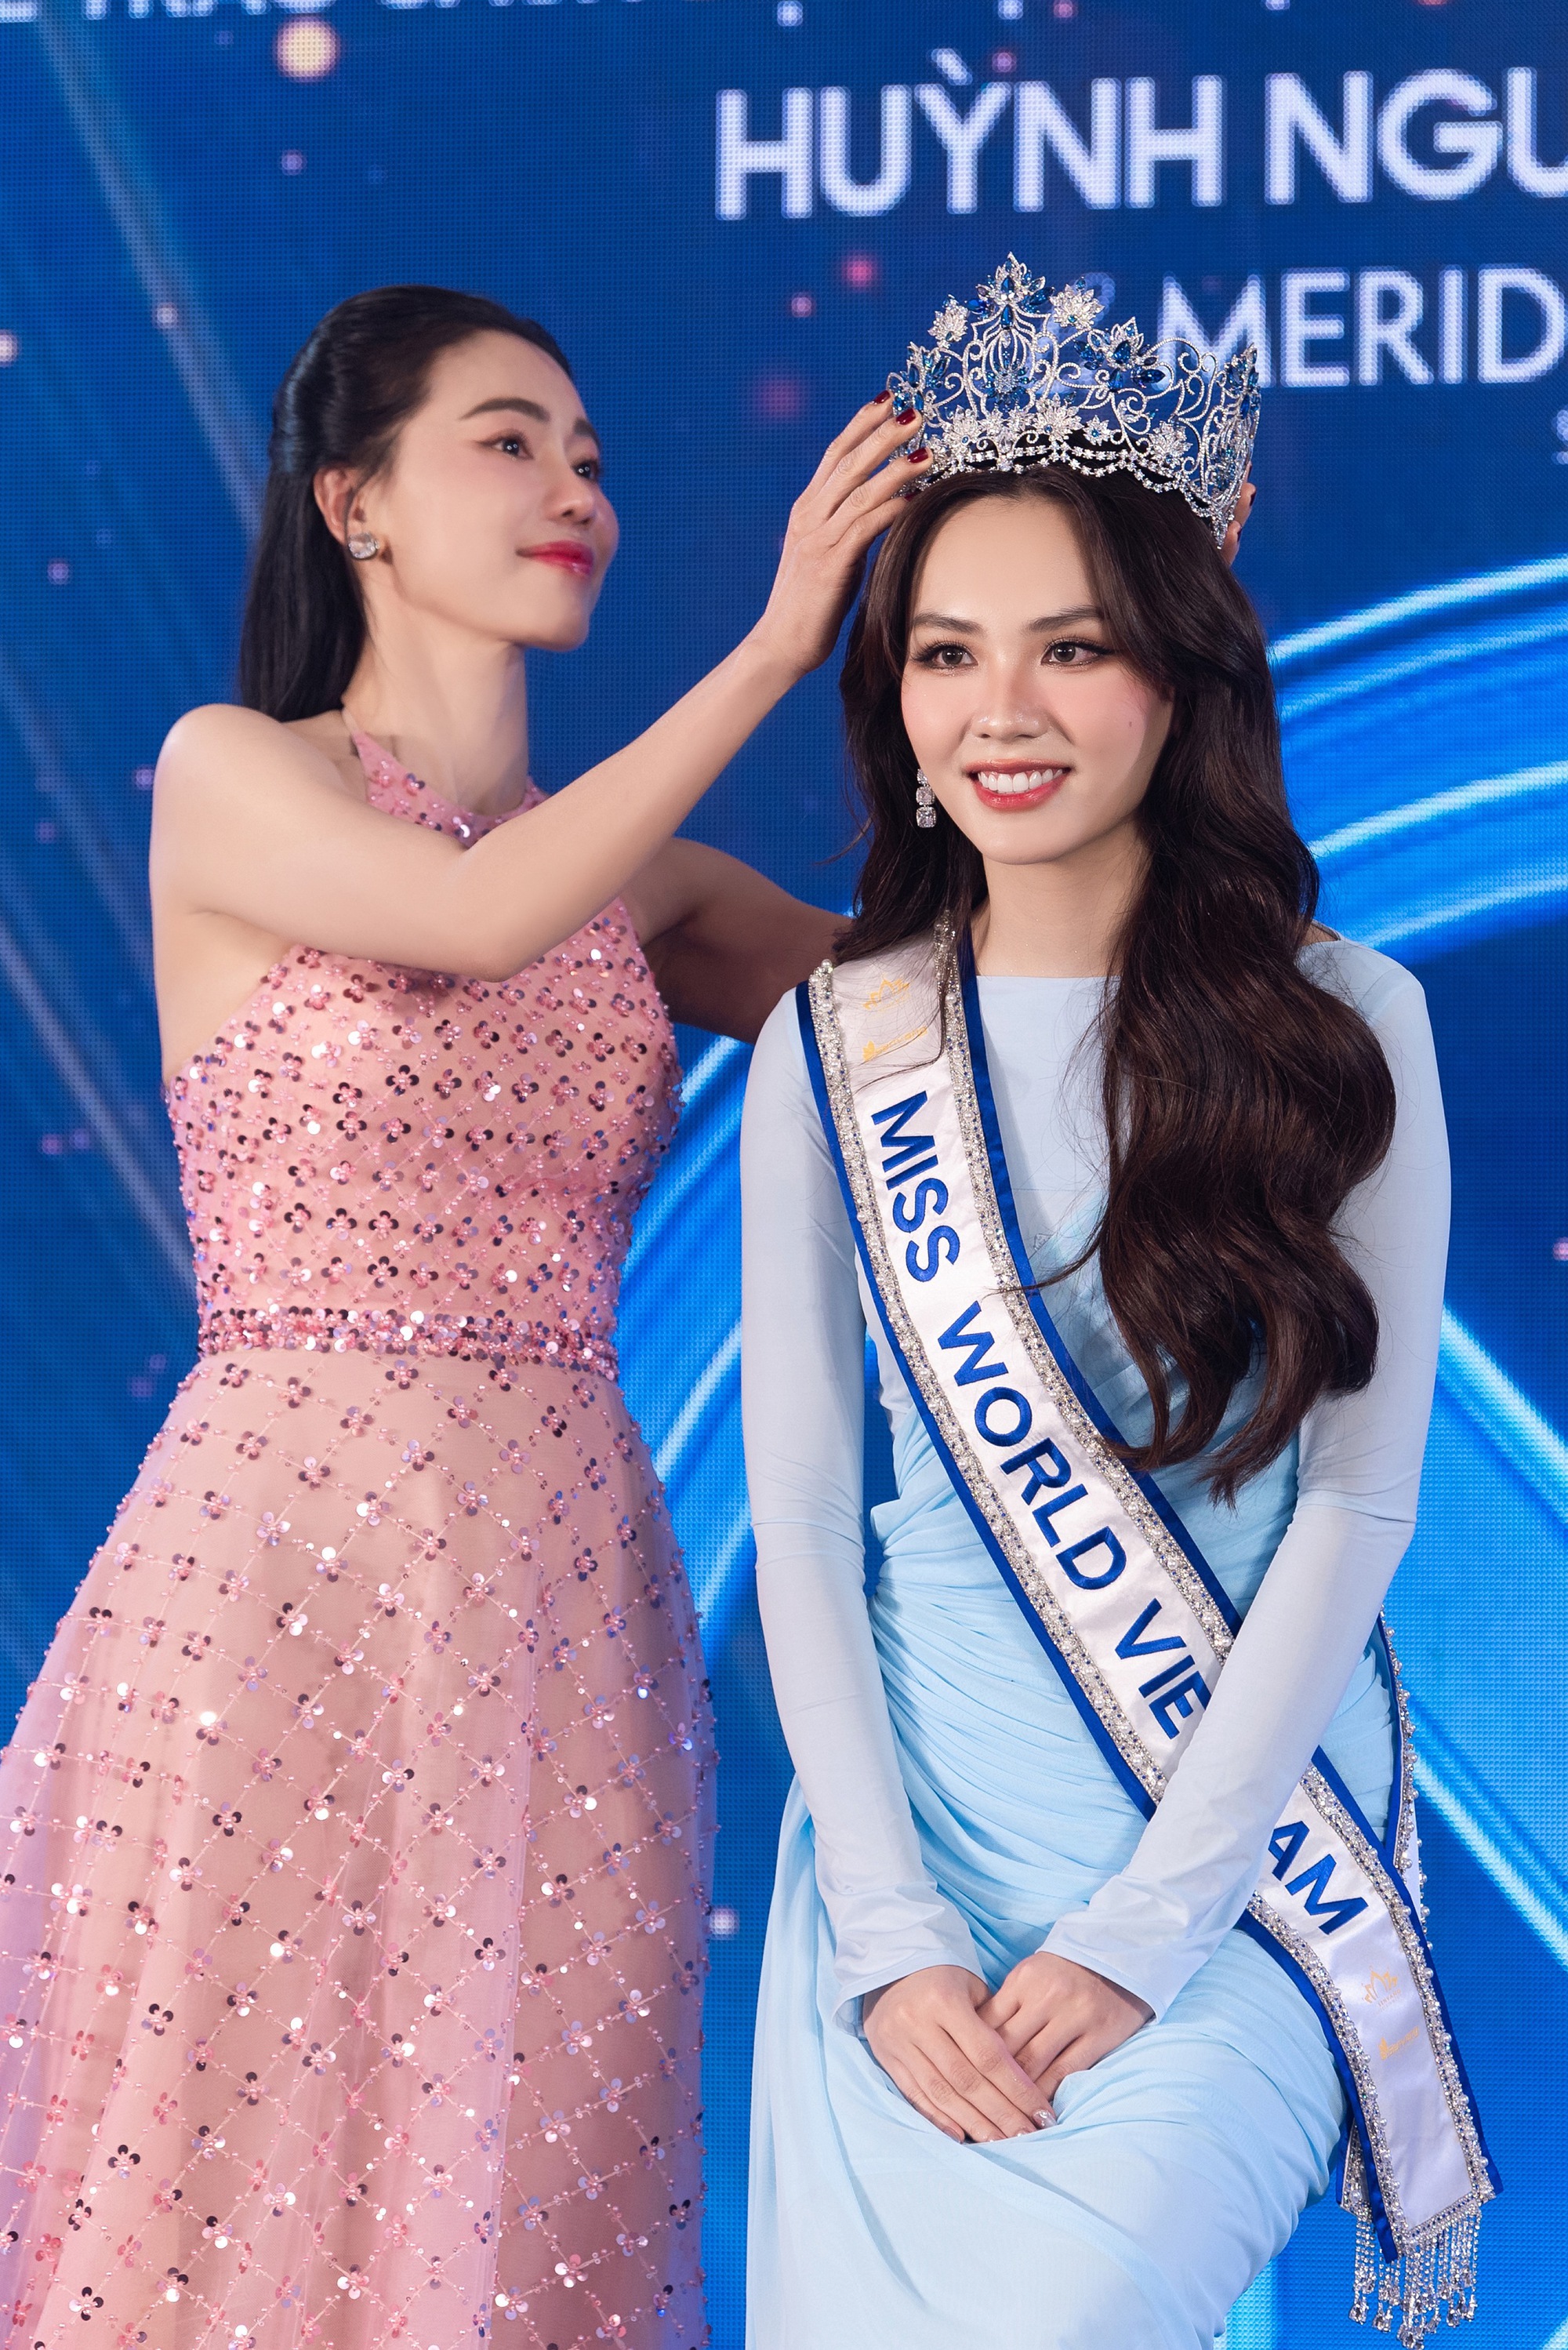 Hoa hậu Mai Phương công bố loạt váy áo tại Miss World, 1 nhân vật đặc biệt và dàn Hậu đình đám góp mặt- Ảnh 4.